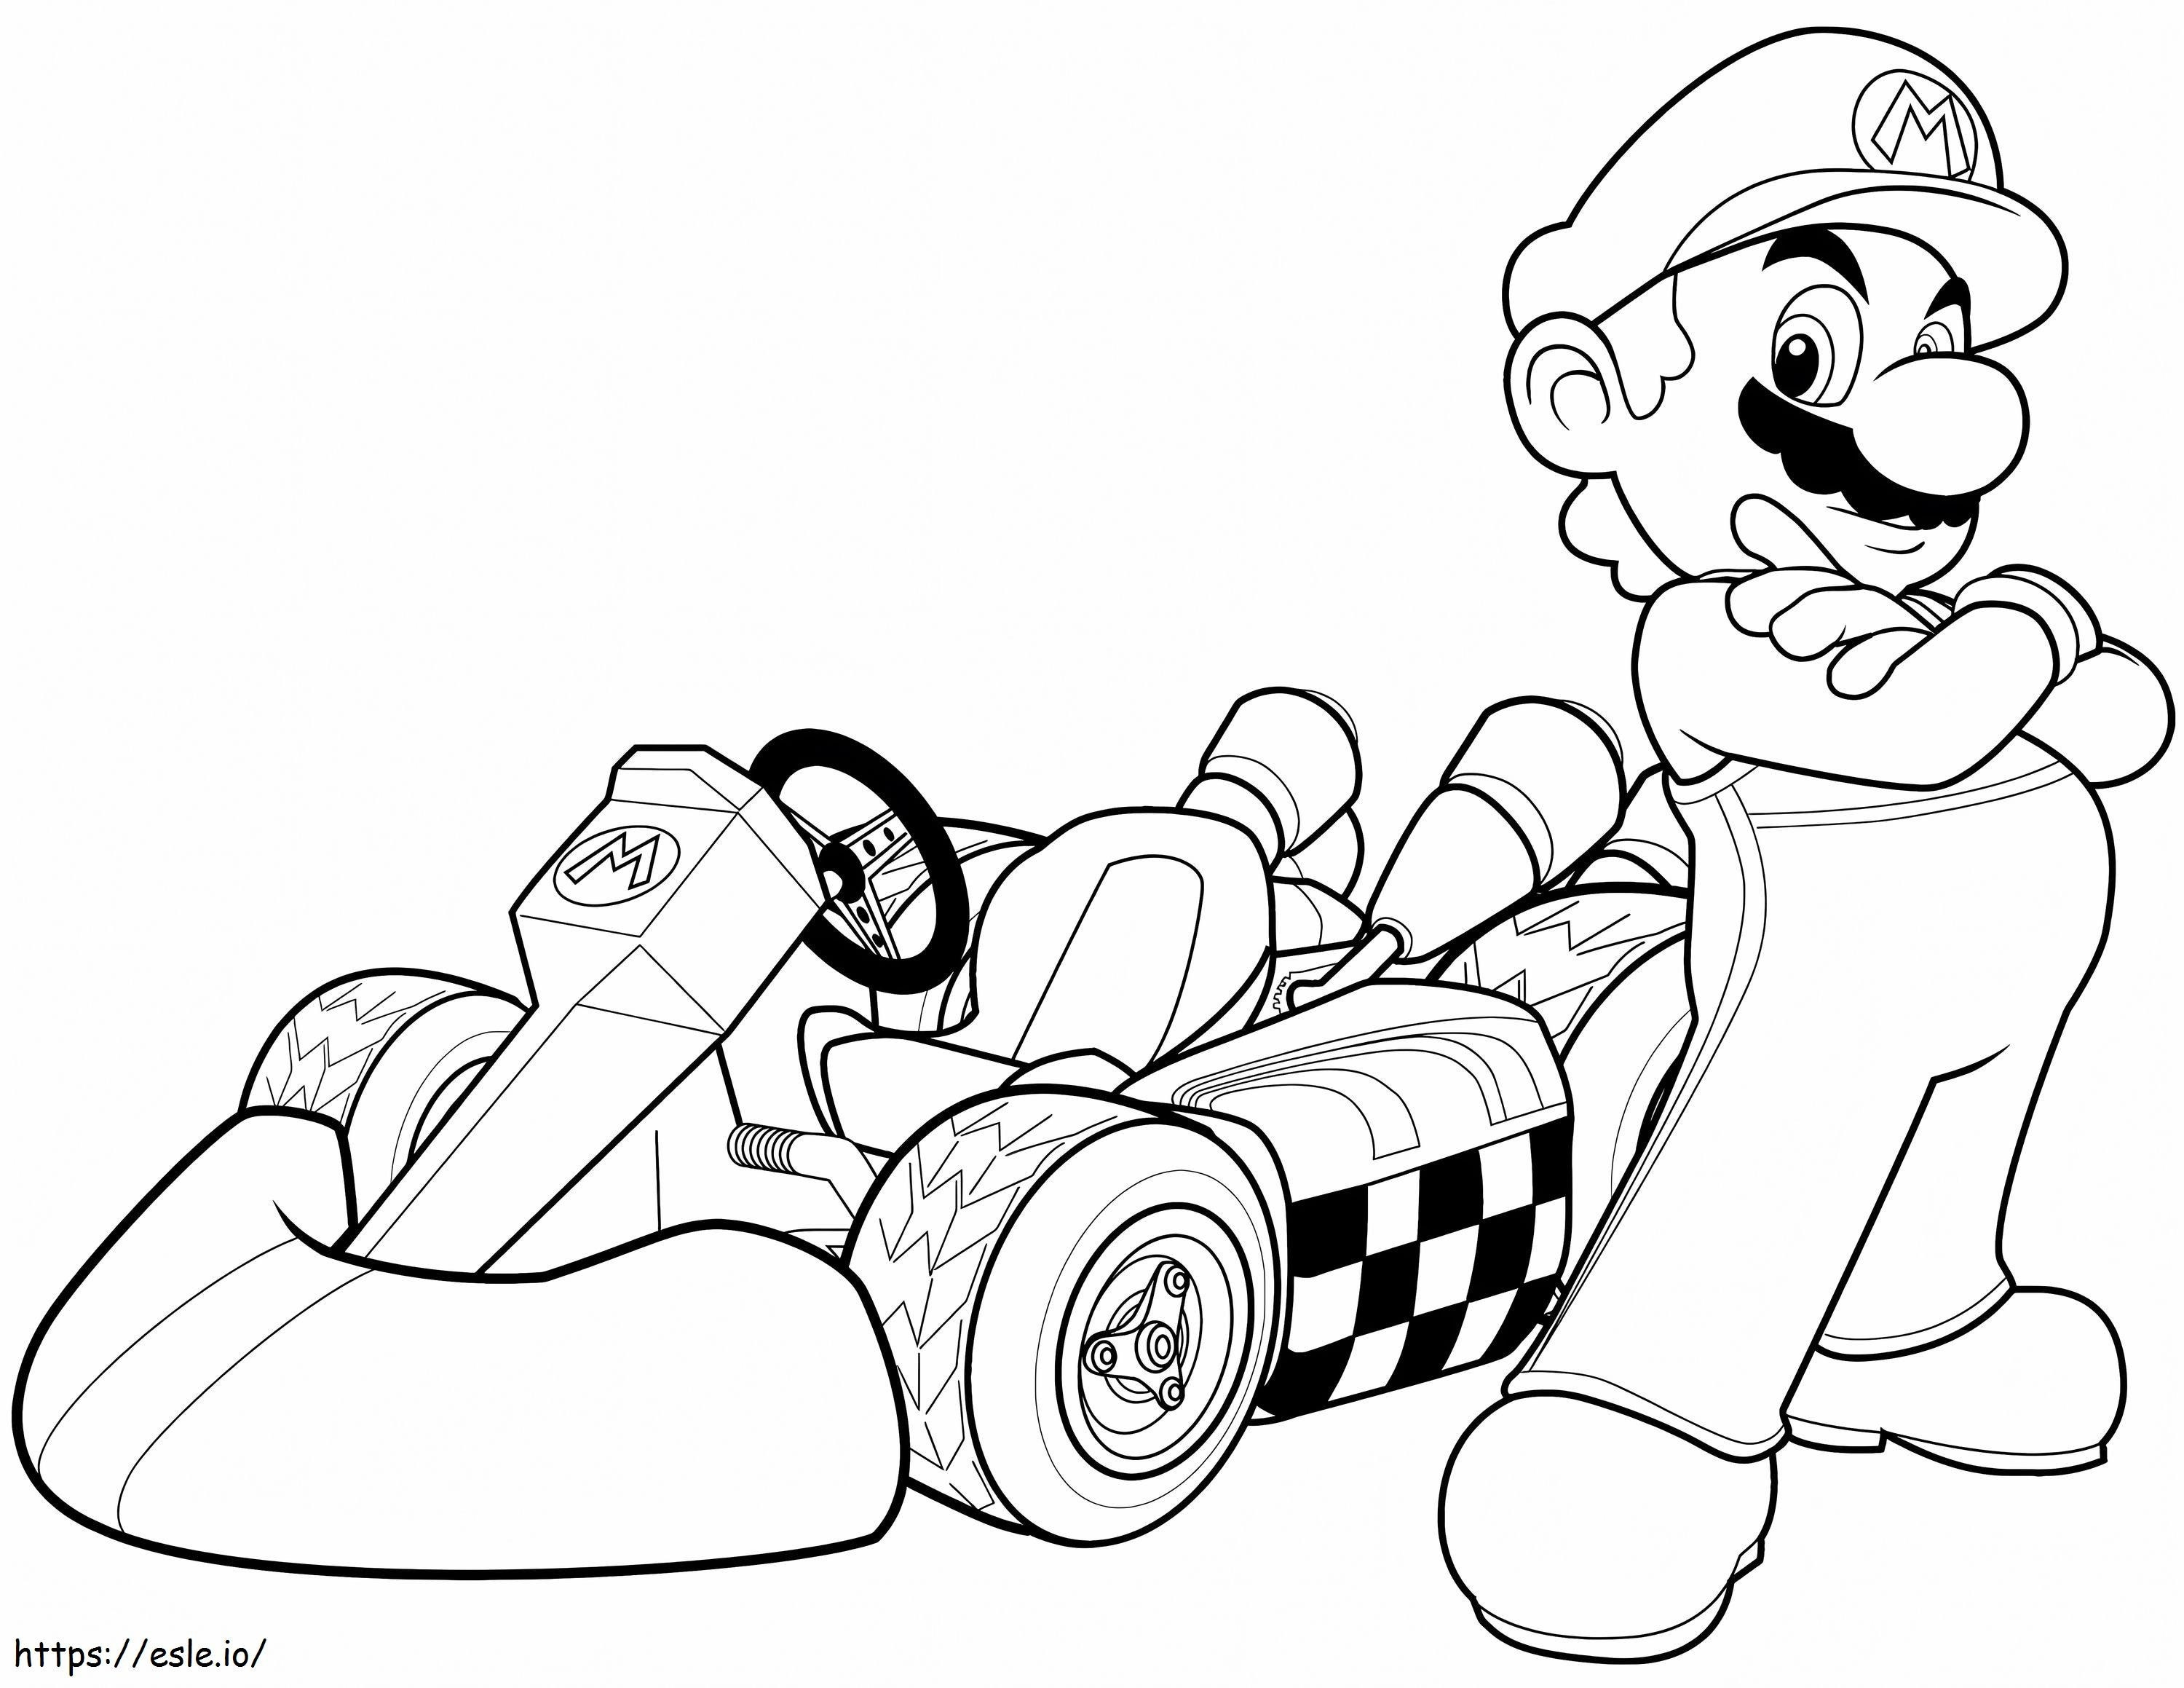  Mario In Mario Kart Wii da colorare